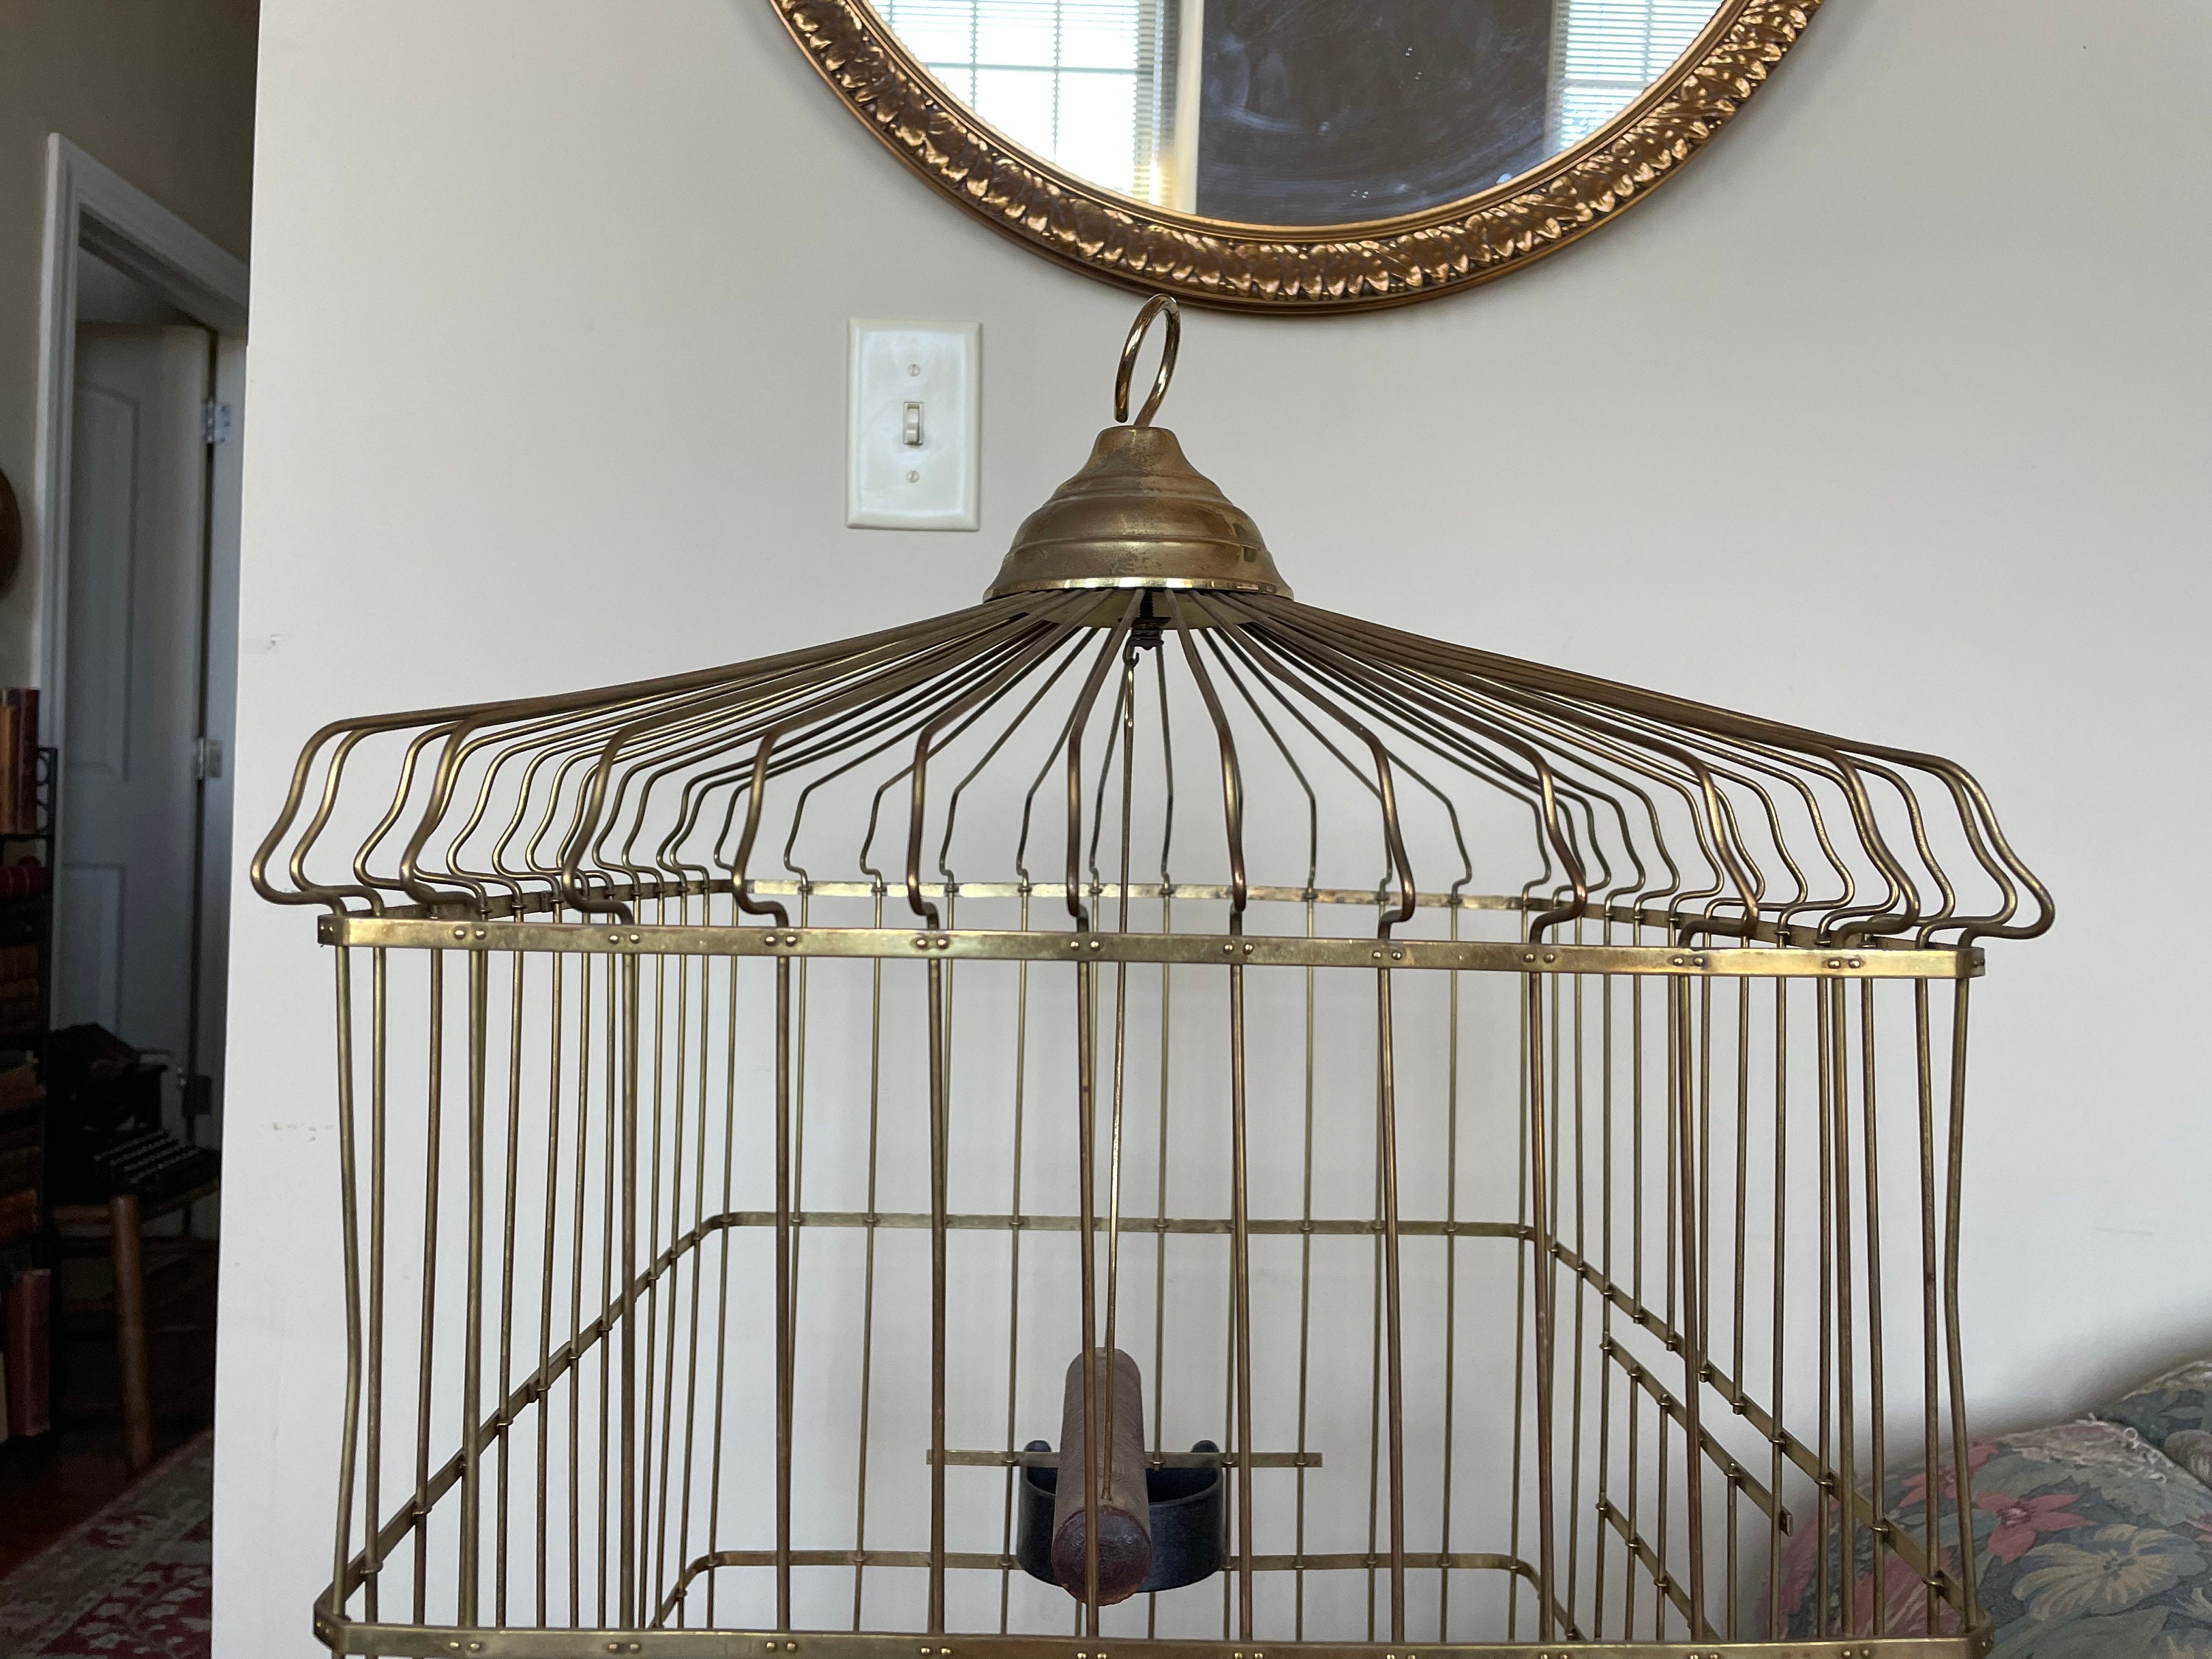 Antique Hendryx Brass Bird Cage 